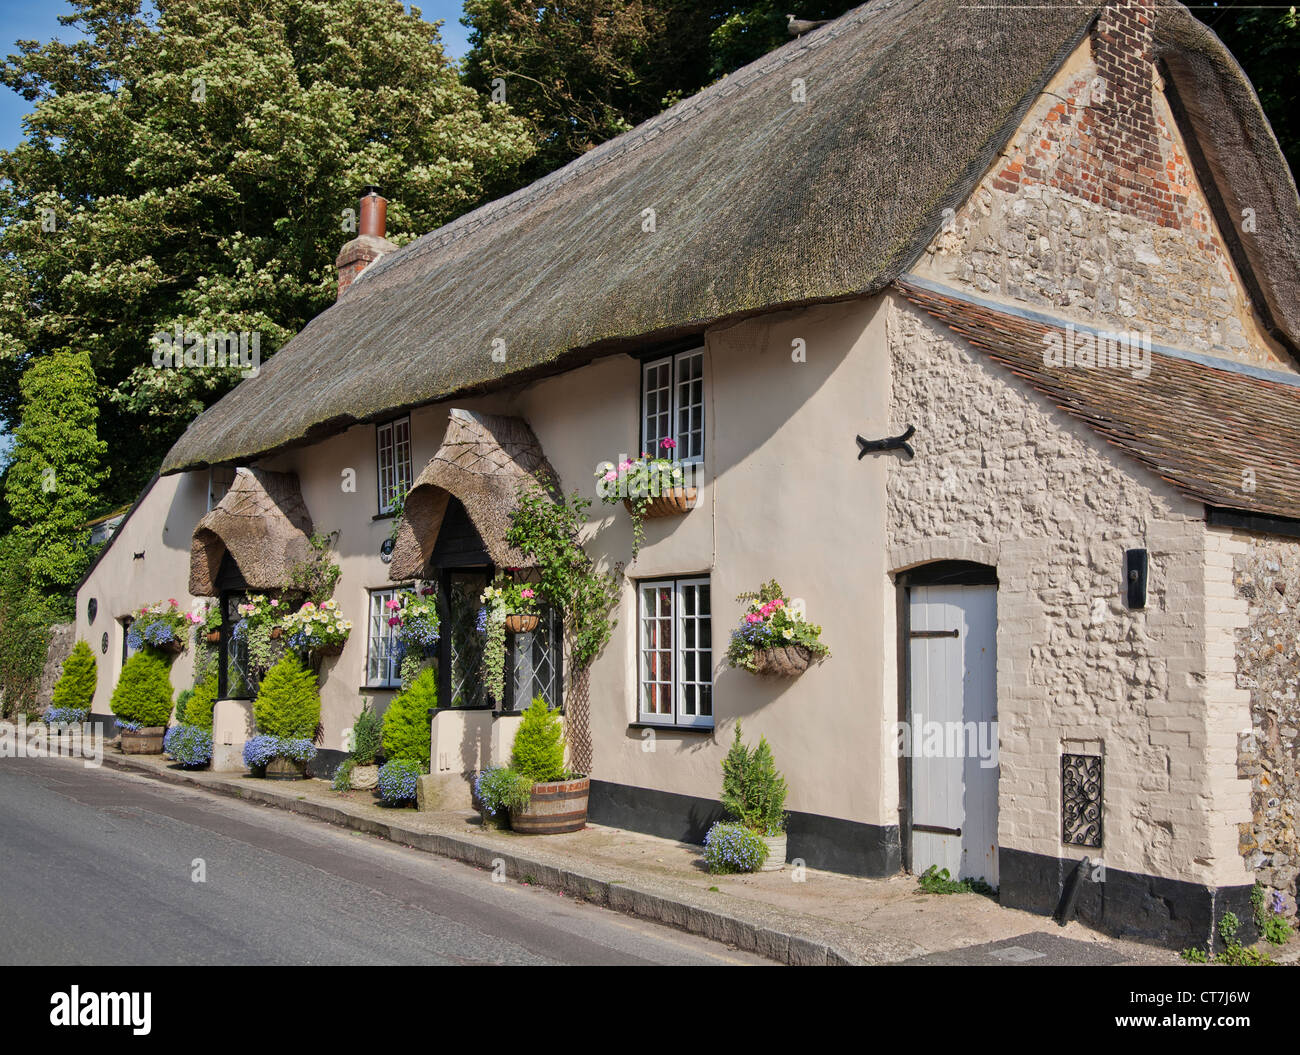 United Kingdom. England. Dorset. Bournemouth. Thatched cottage. Stock Photo